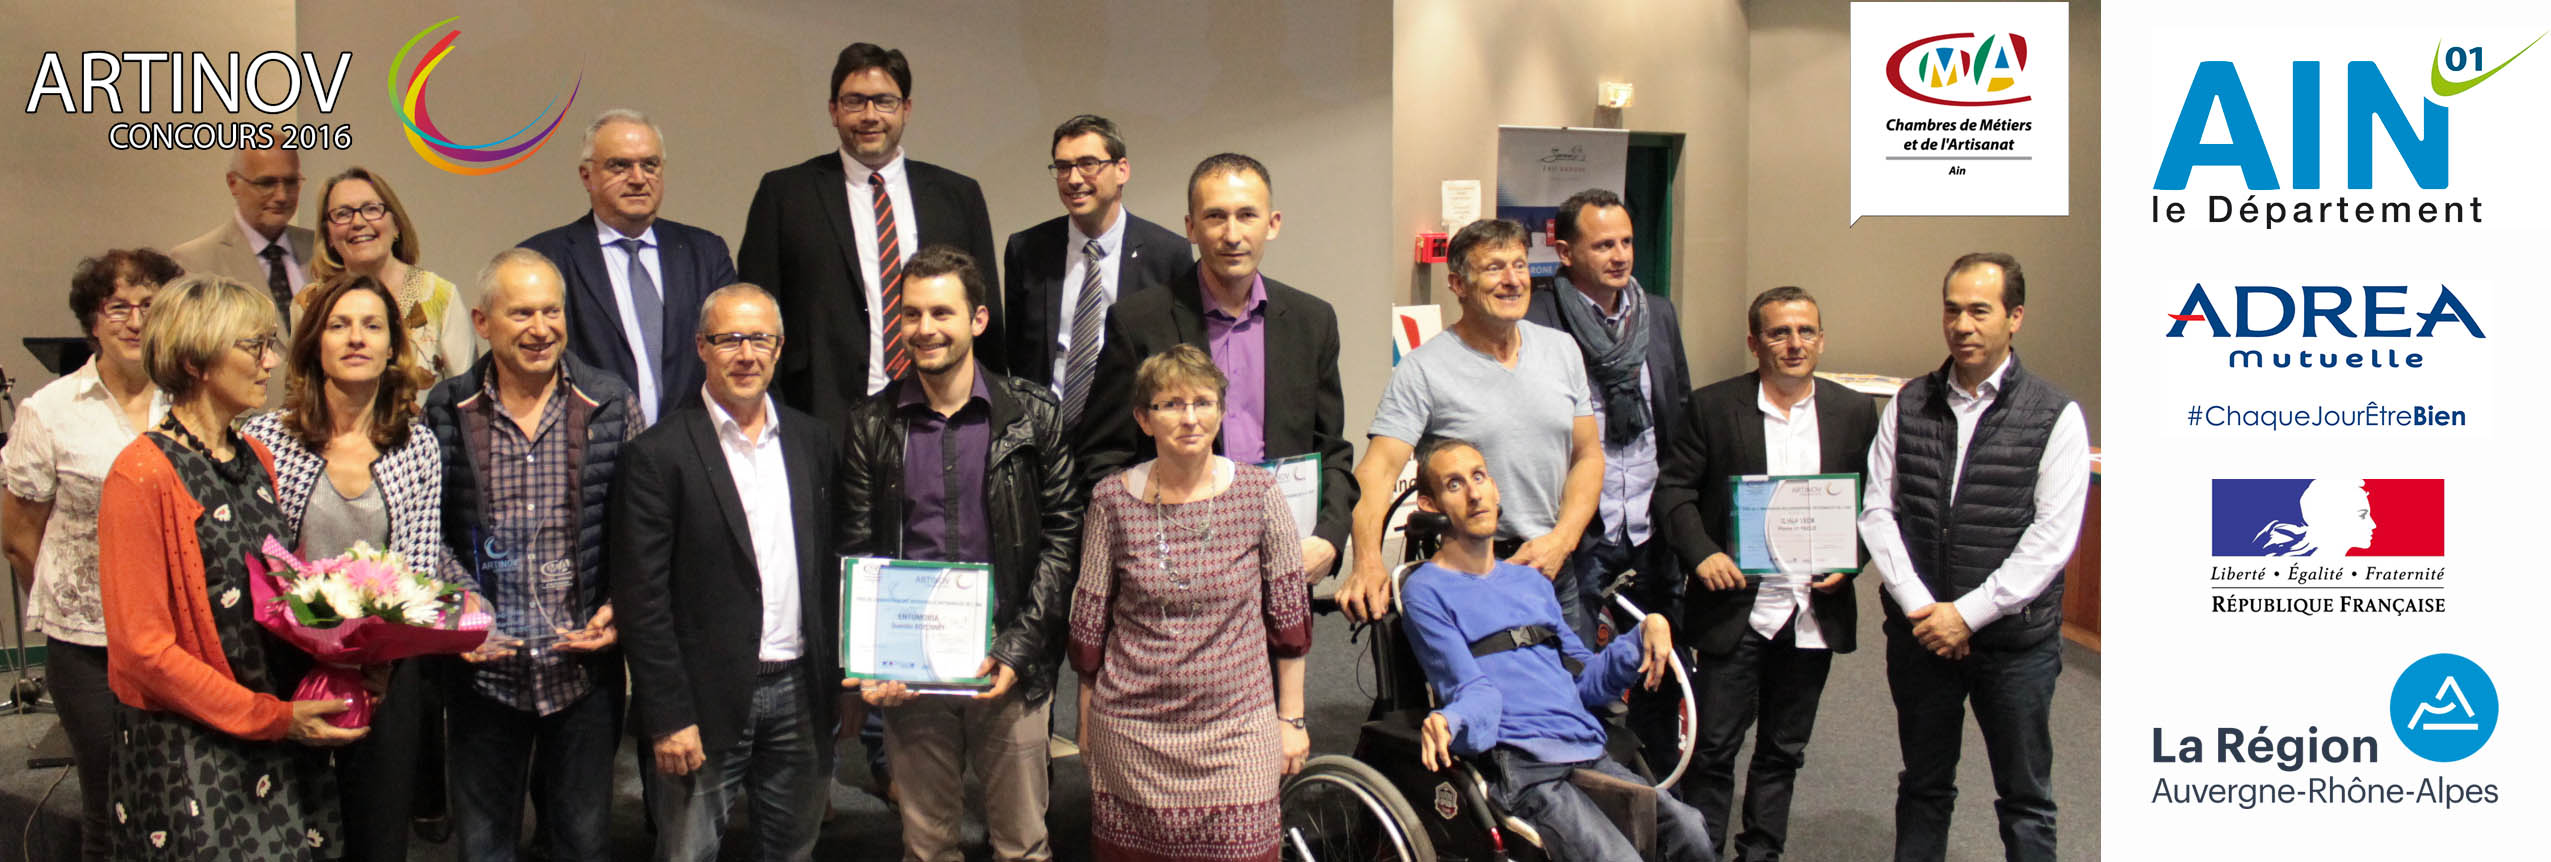 Photo des lauréats et partenaires de la soirée ARTINOV au CT-IPC